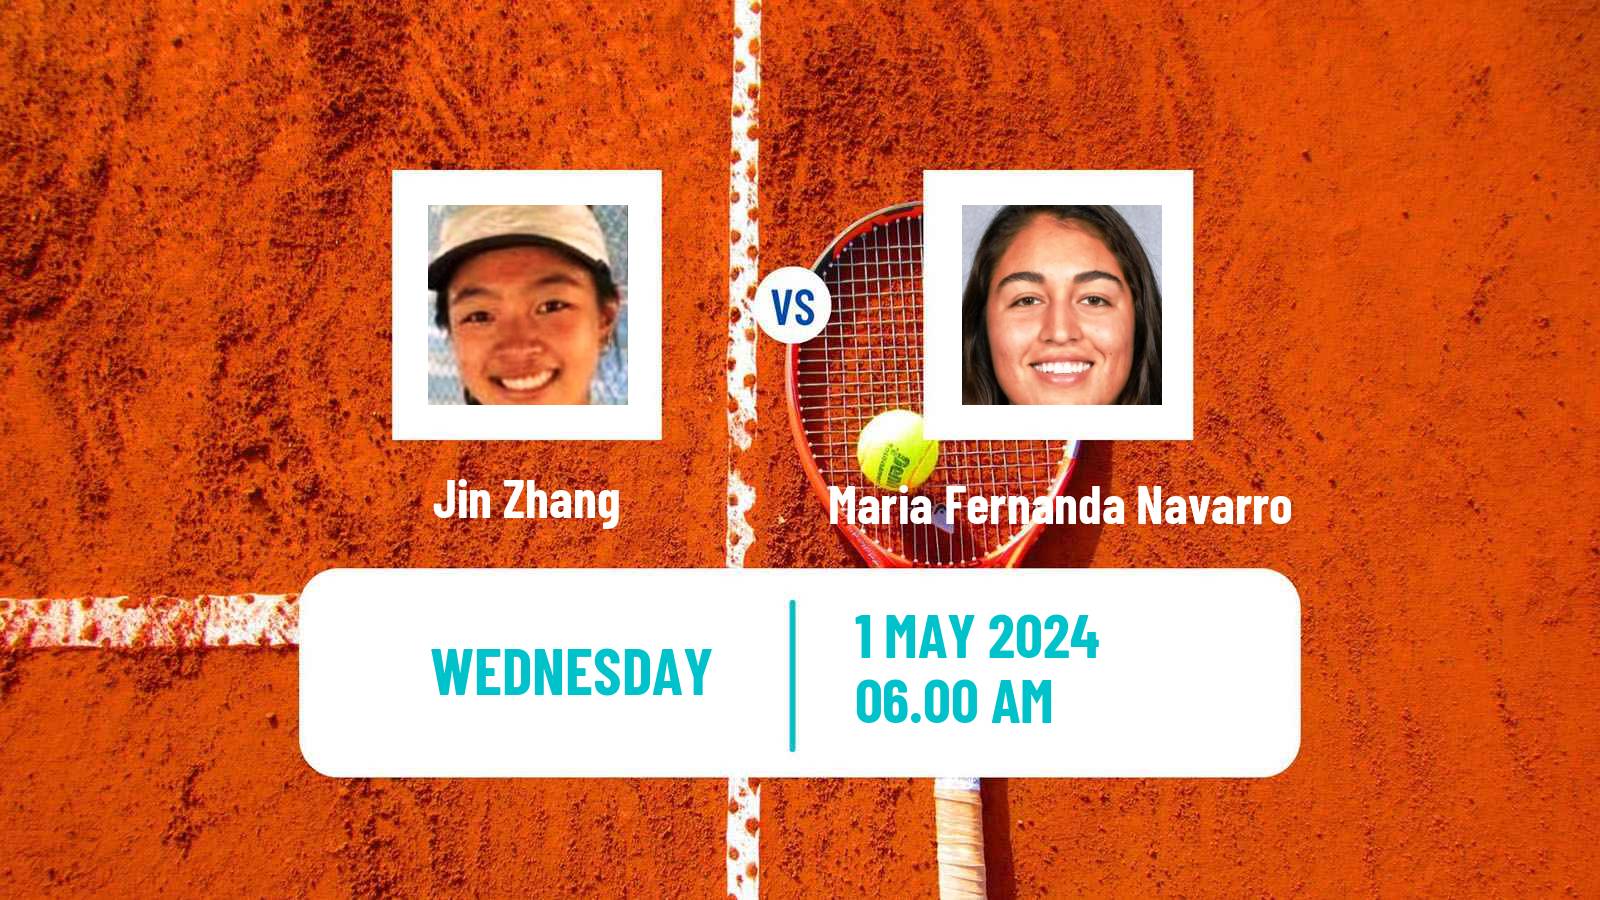 Tennis ITF W15 Monastir 16 Women Jin Zhang - Maria Fernanda Navarro